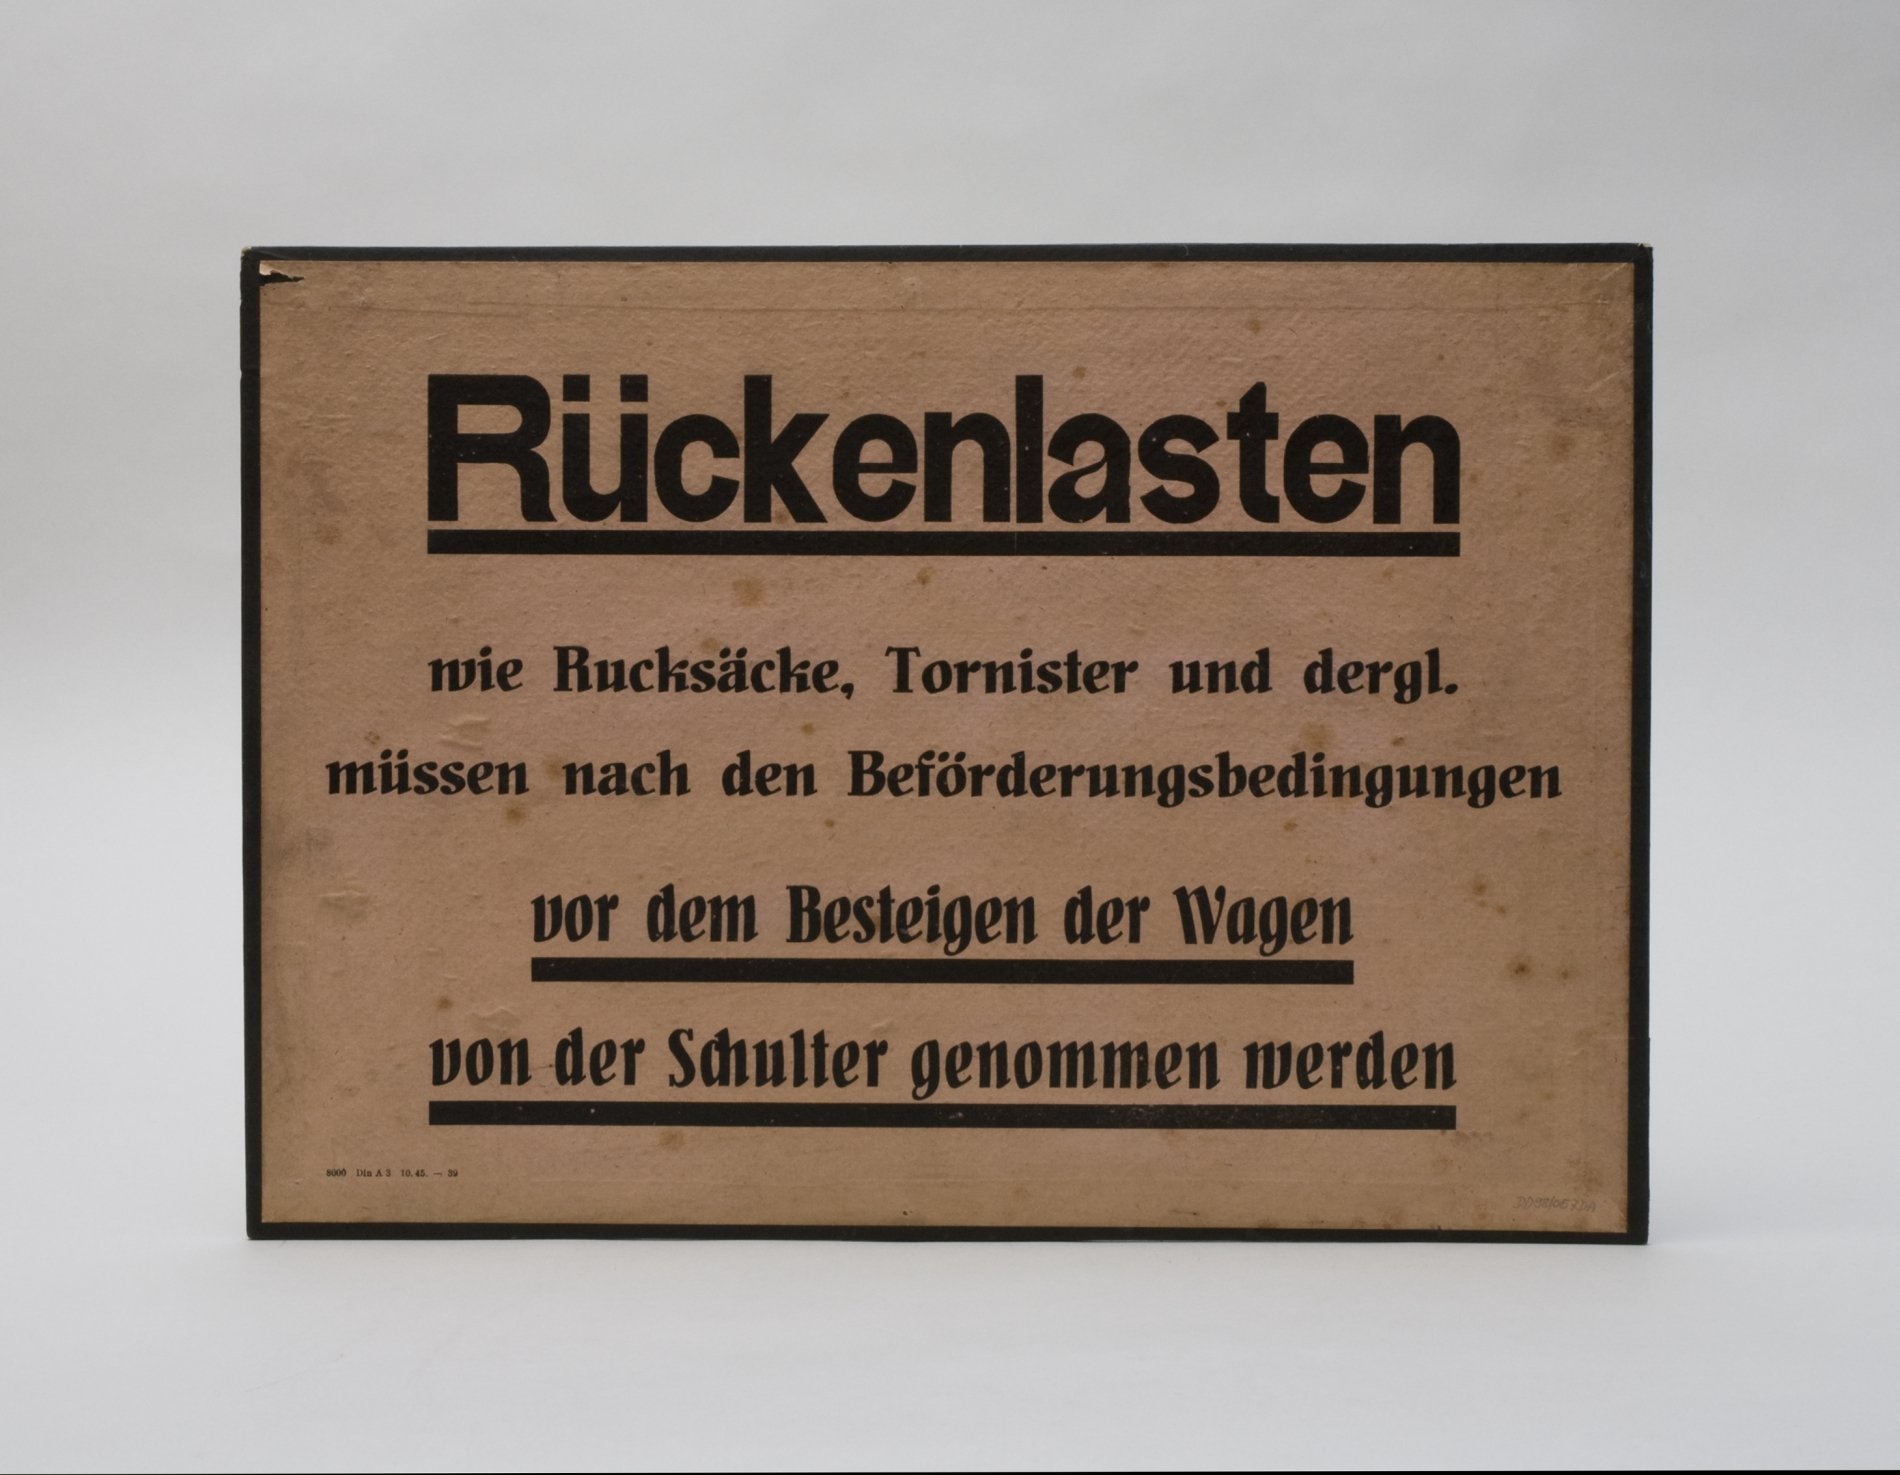 Pappschild "Bekanntmachung - BVG" - "Rückenlasten..." (Stiftung Domäne Dahlem - Landgut und Museum, Weiternutzung nur mit Genehmigung des Museums CC BY-NC-SA)